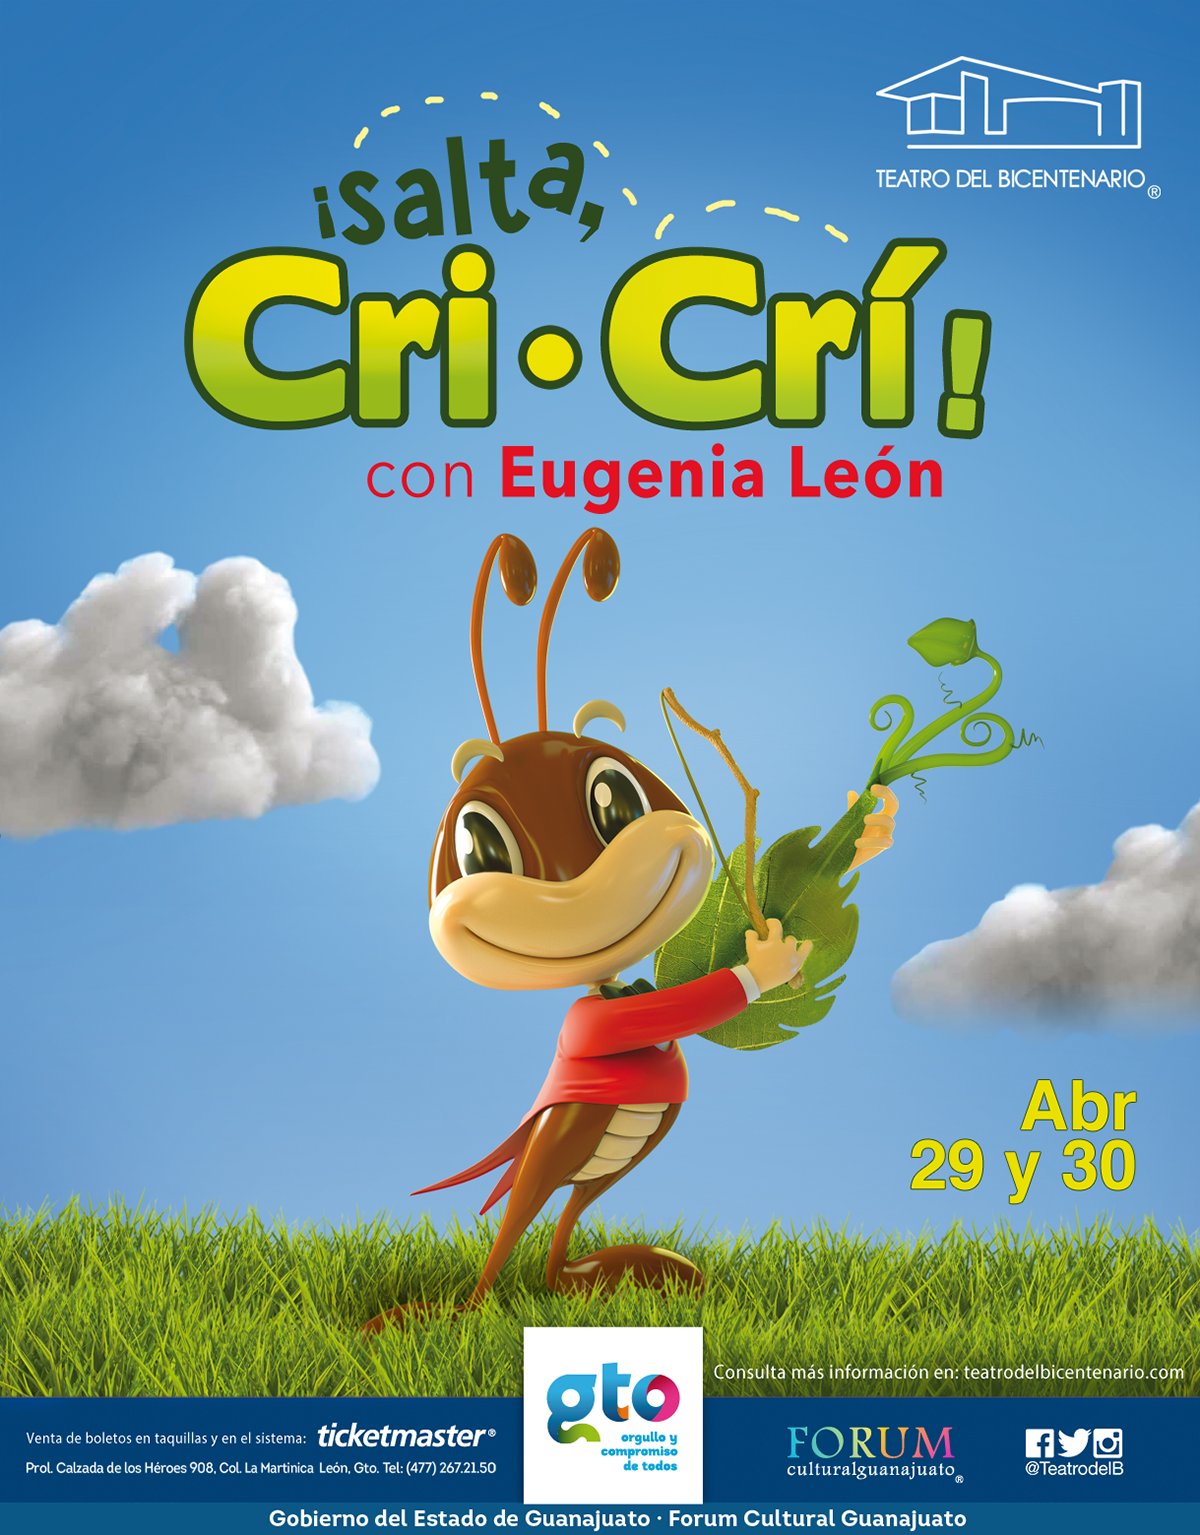 cartel diseño gráfico teatro del bicentenario Cri-cri